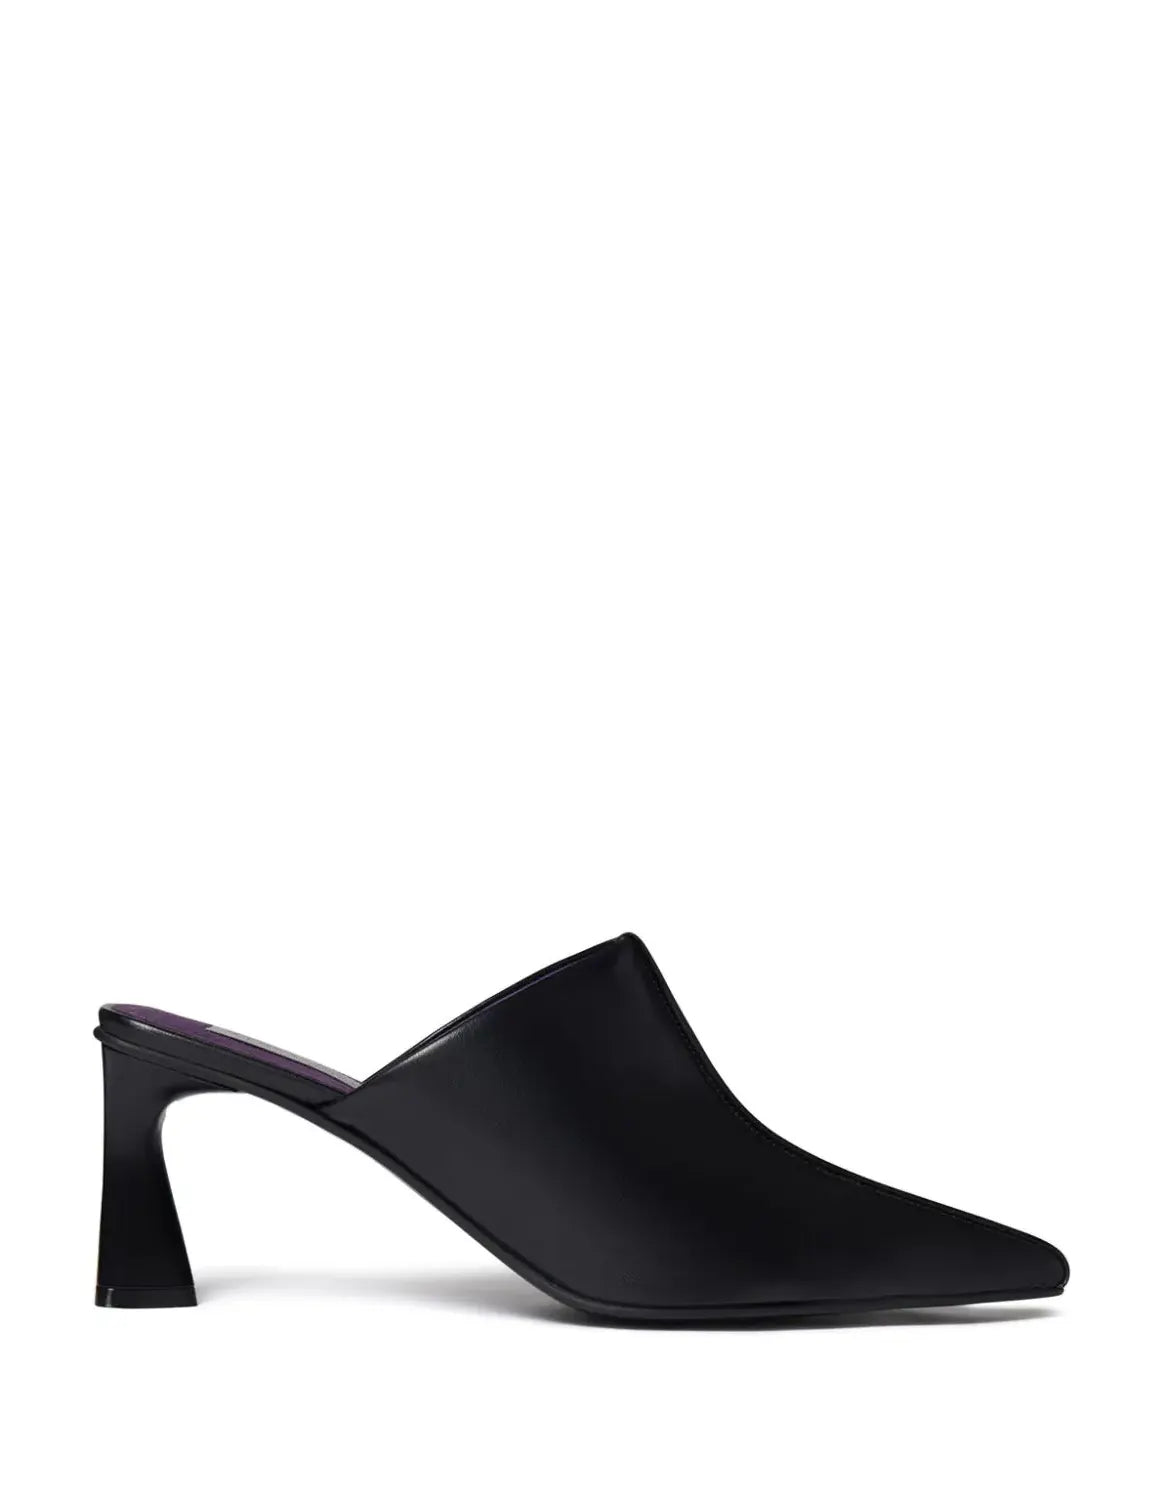 Elsa Eco Alter Mat high heels, black